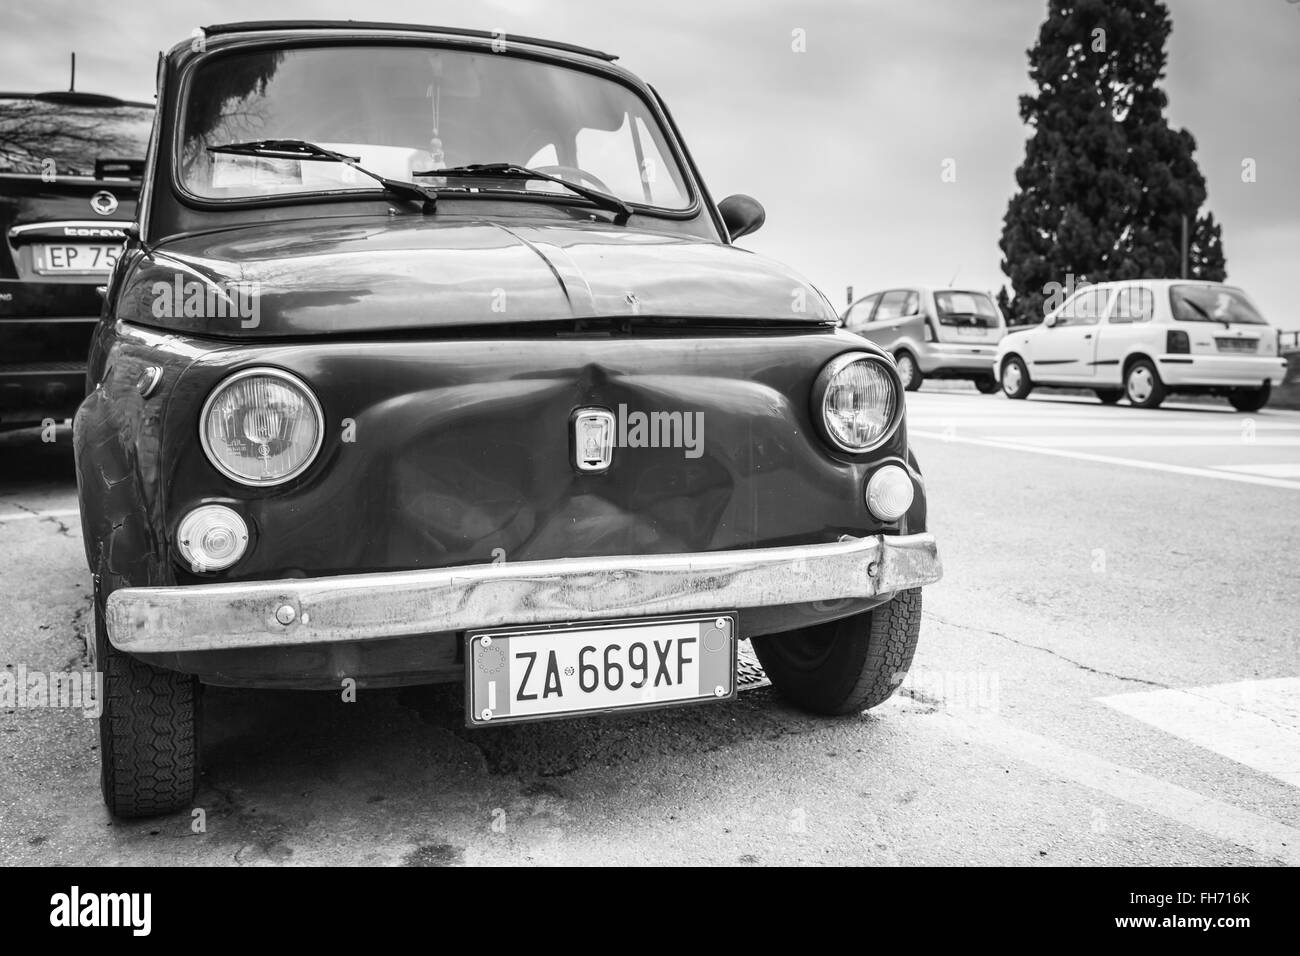 Fermo, Italia - 11 Febbraio 2016: Vecchia Fiat Nuova 500 city car prodotta dal costruttore italiano Fiat tra 1957 e 1975 Foto Stock